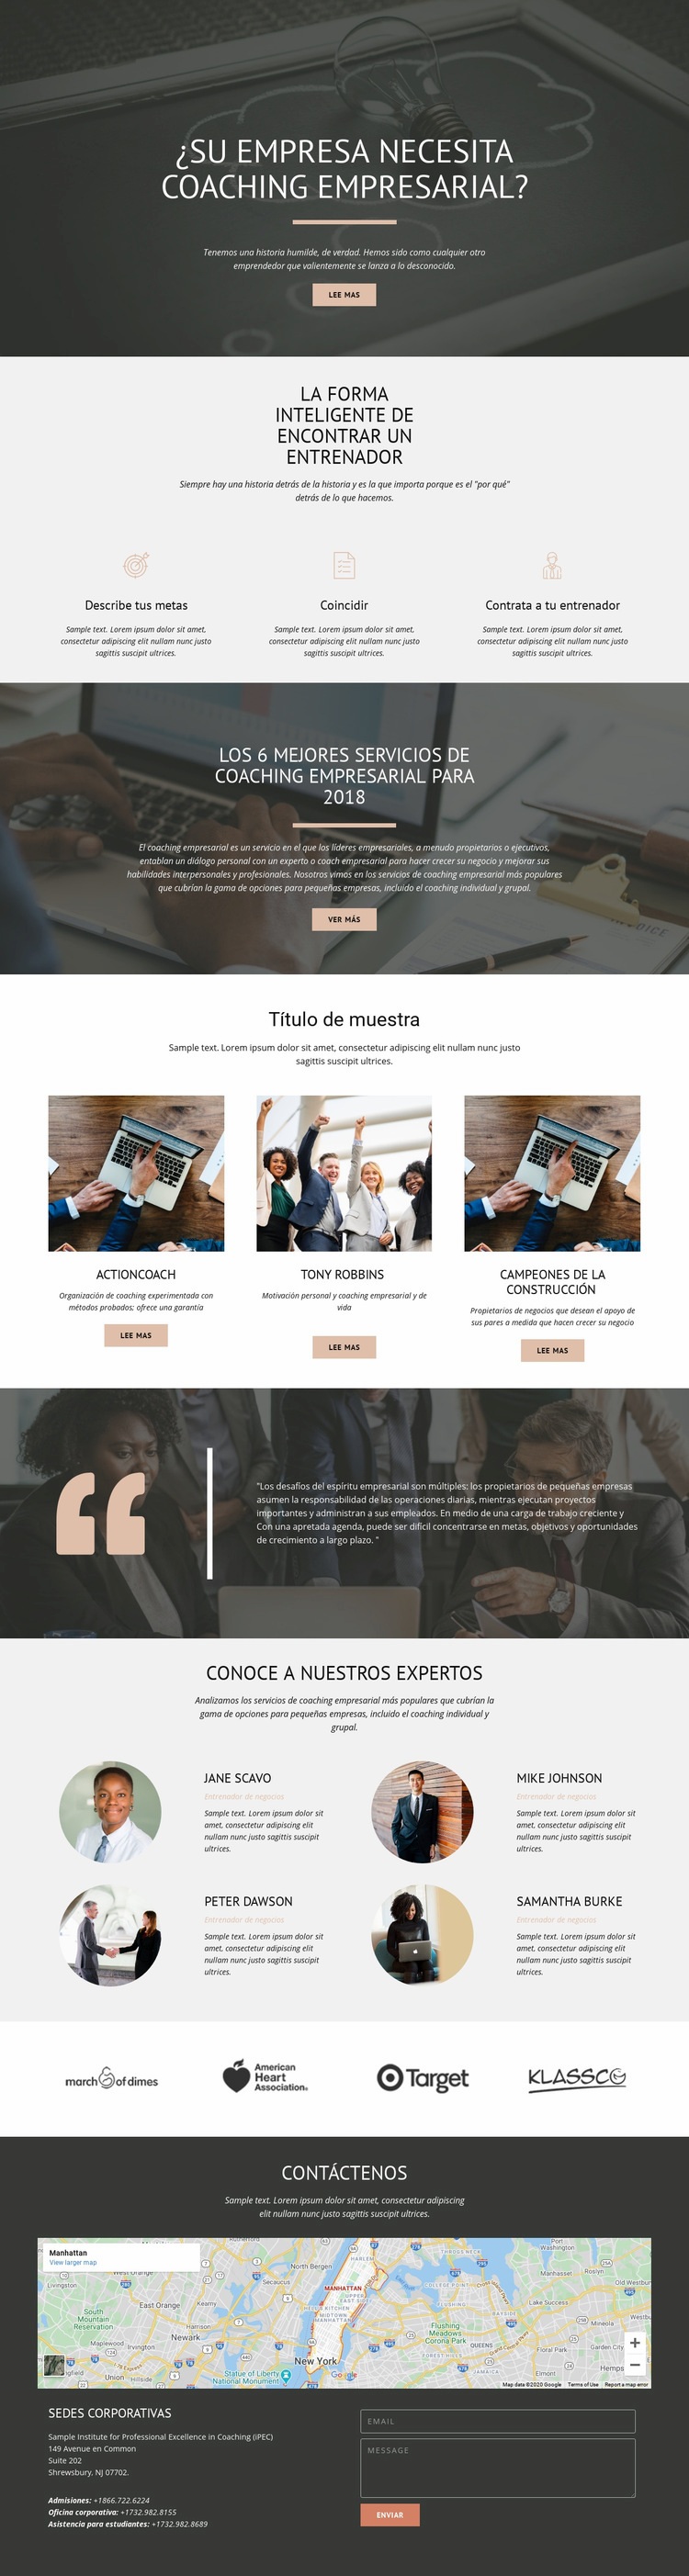 Coaching empresarial Maqueta de sitio web